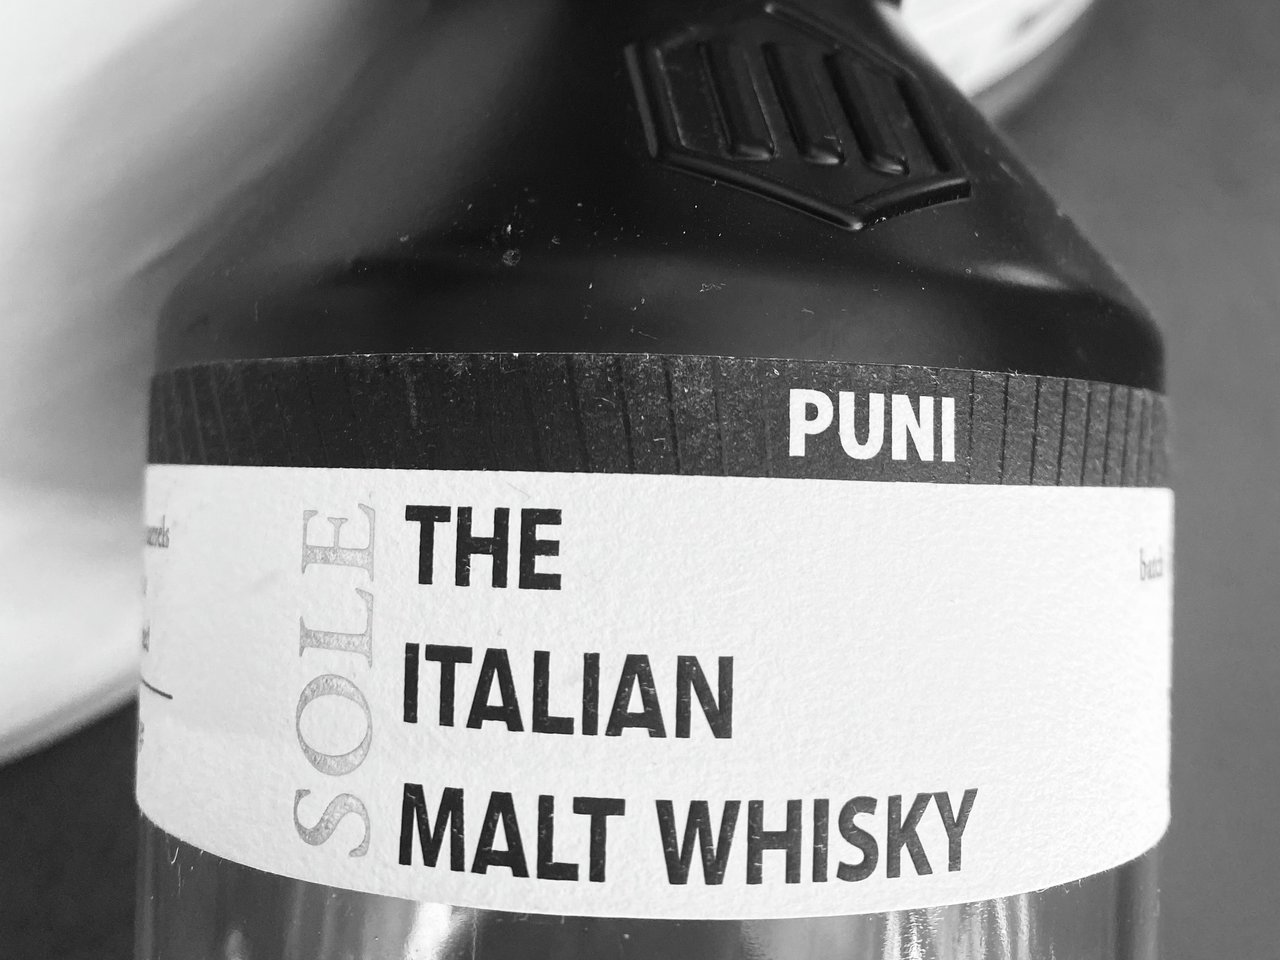 Die Brennerei ist die erste und bisher einzige Whisky Destillerie Italiens  ist die Firma Puni Mals.